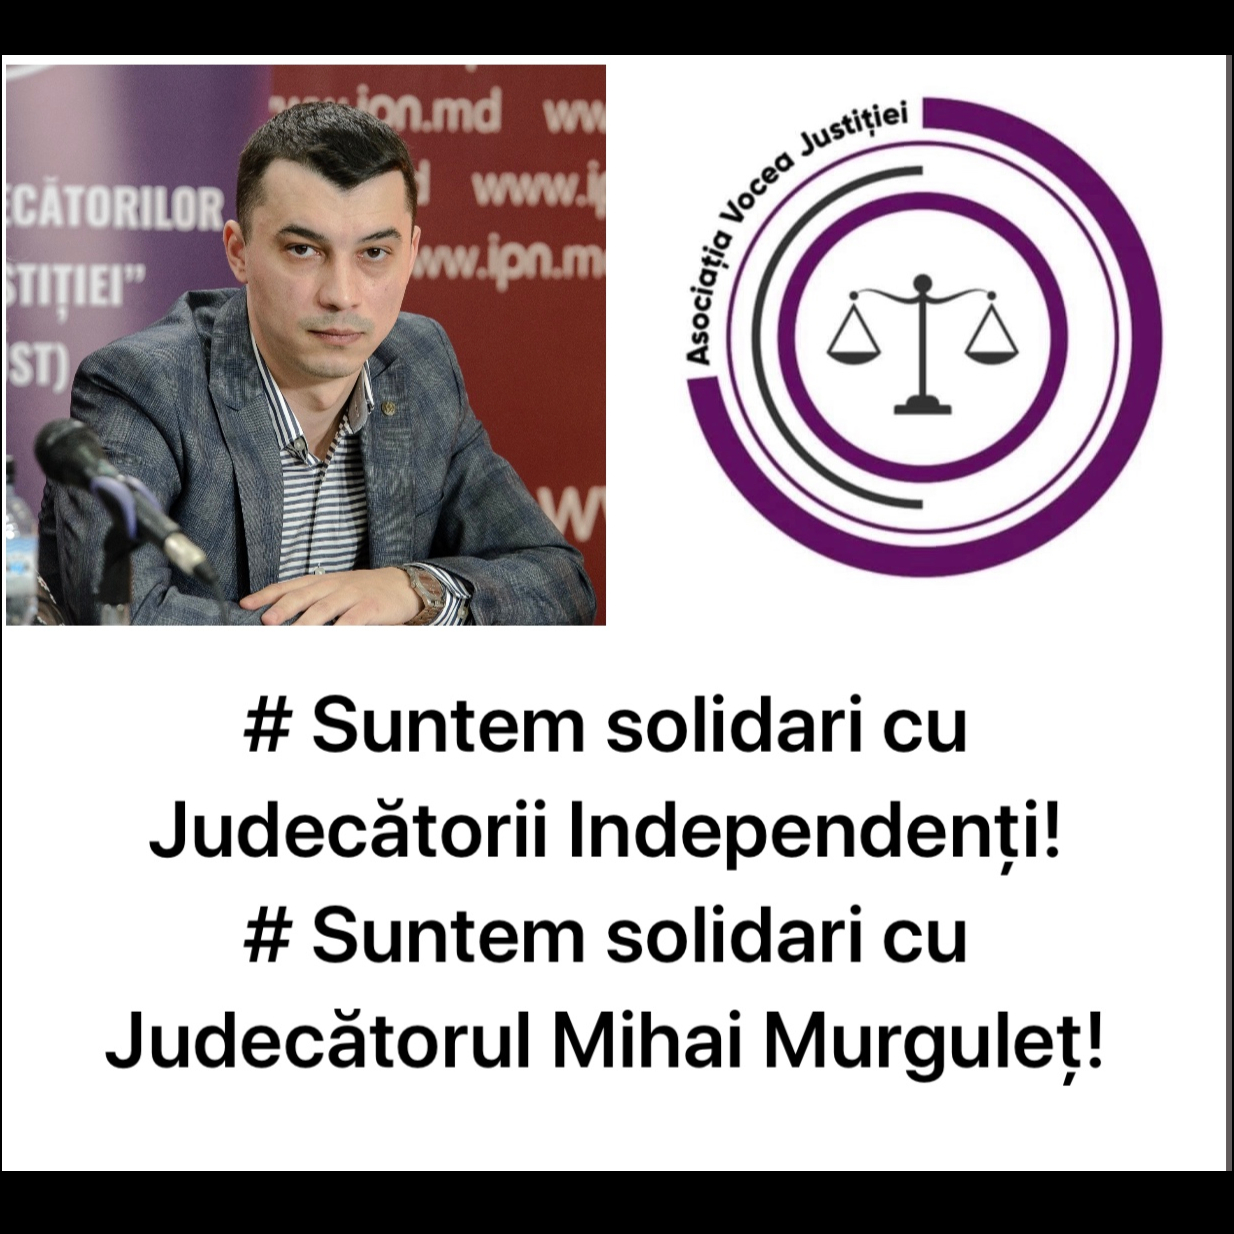 APEL DE SOLIDARIZARE PENTRU INDEPENDENȚA JUDECĂTORILOR DIN REPUBLICA MOLDOVA